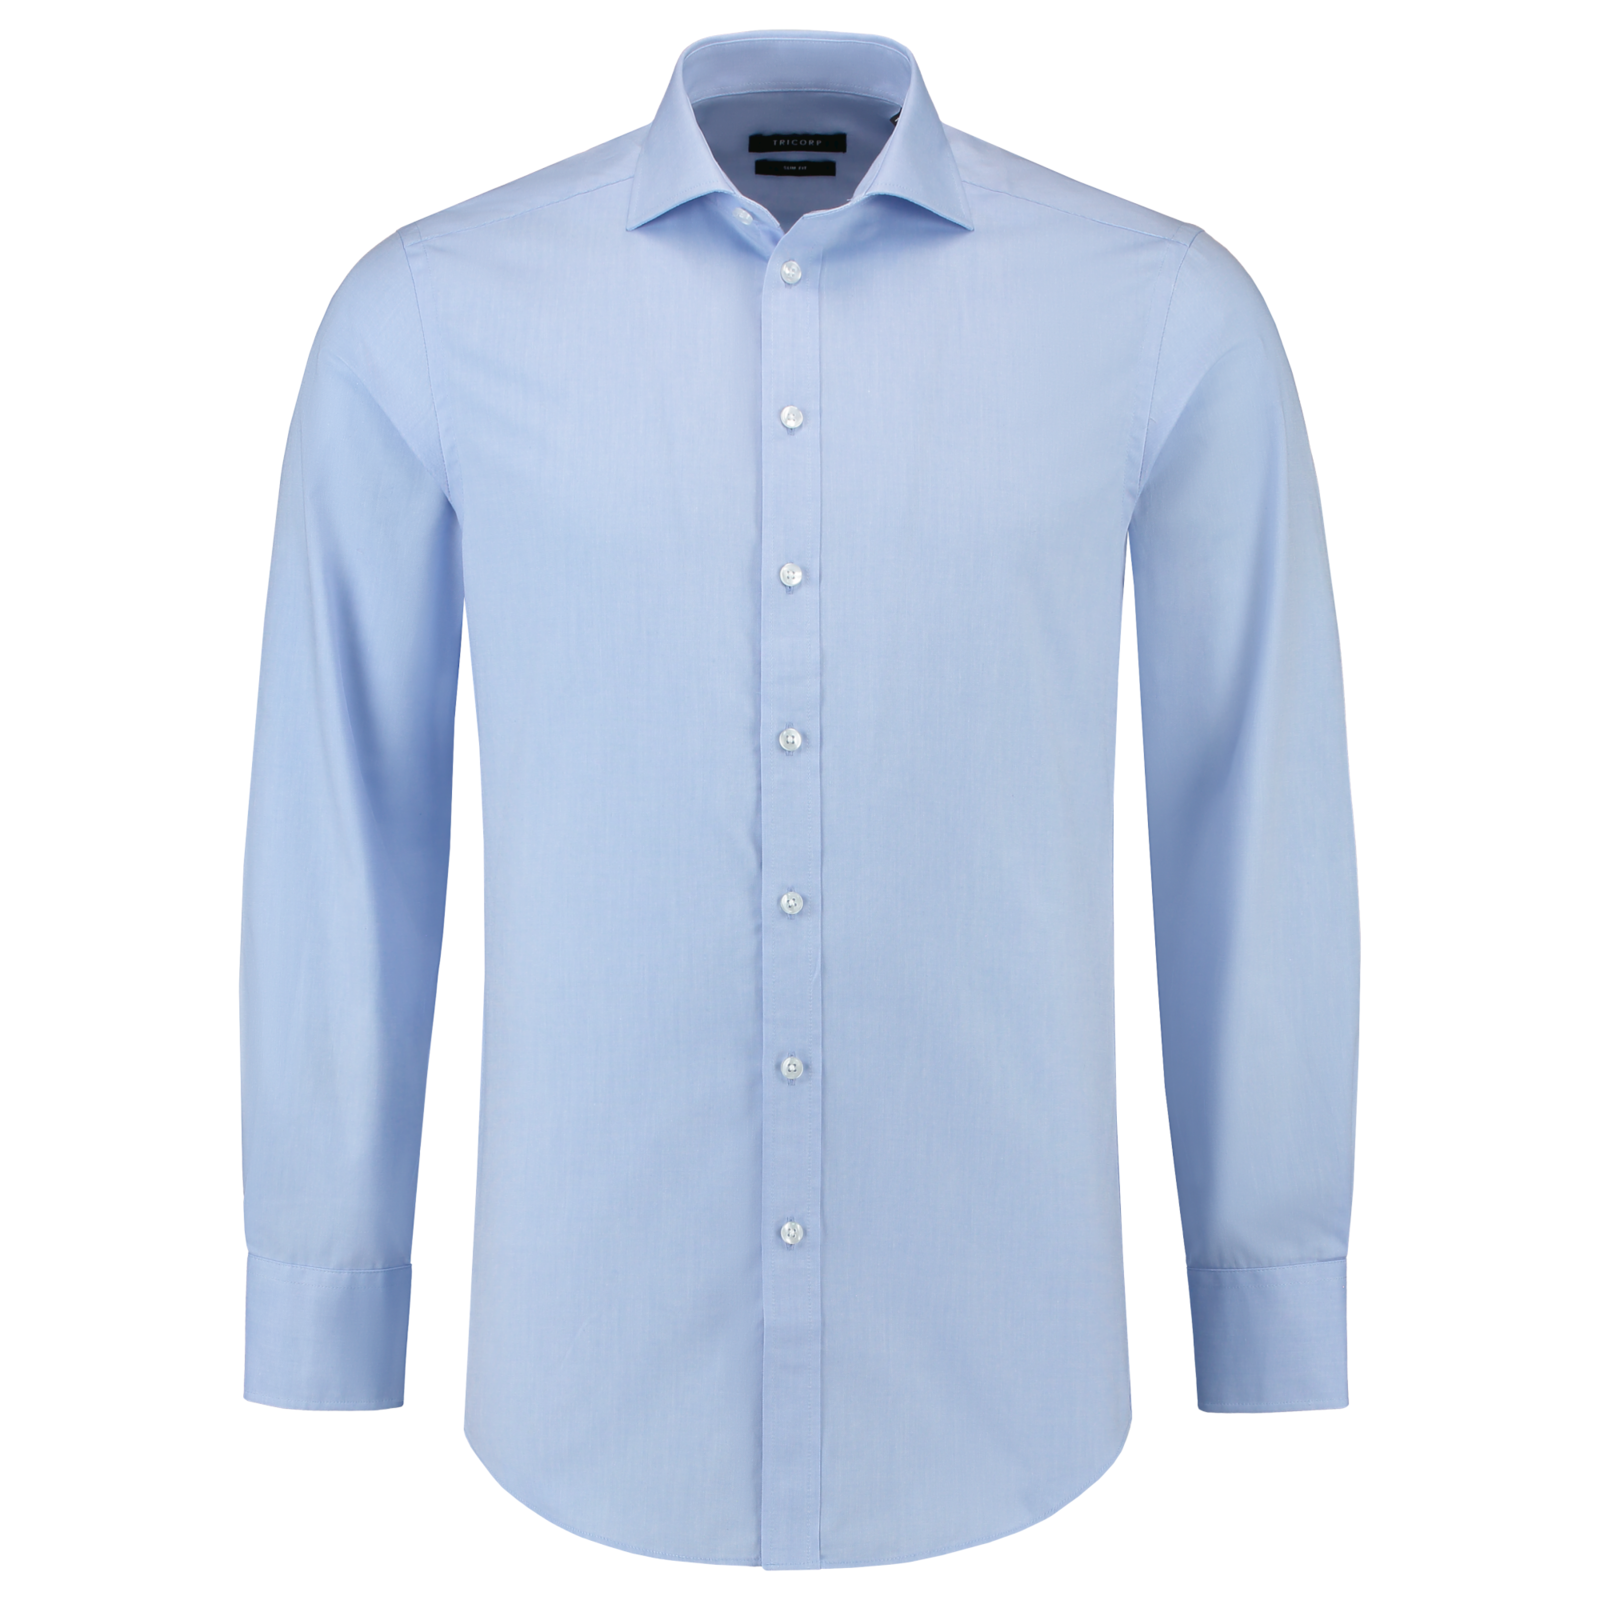 Pánska košeľa s dlhým rukávom Tricorp Fitted Stretch T23 - veľkosť: 38, farba: svetlo modrá